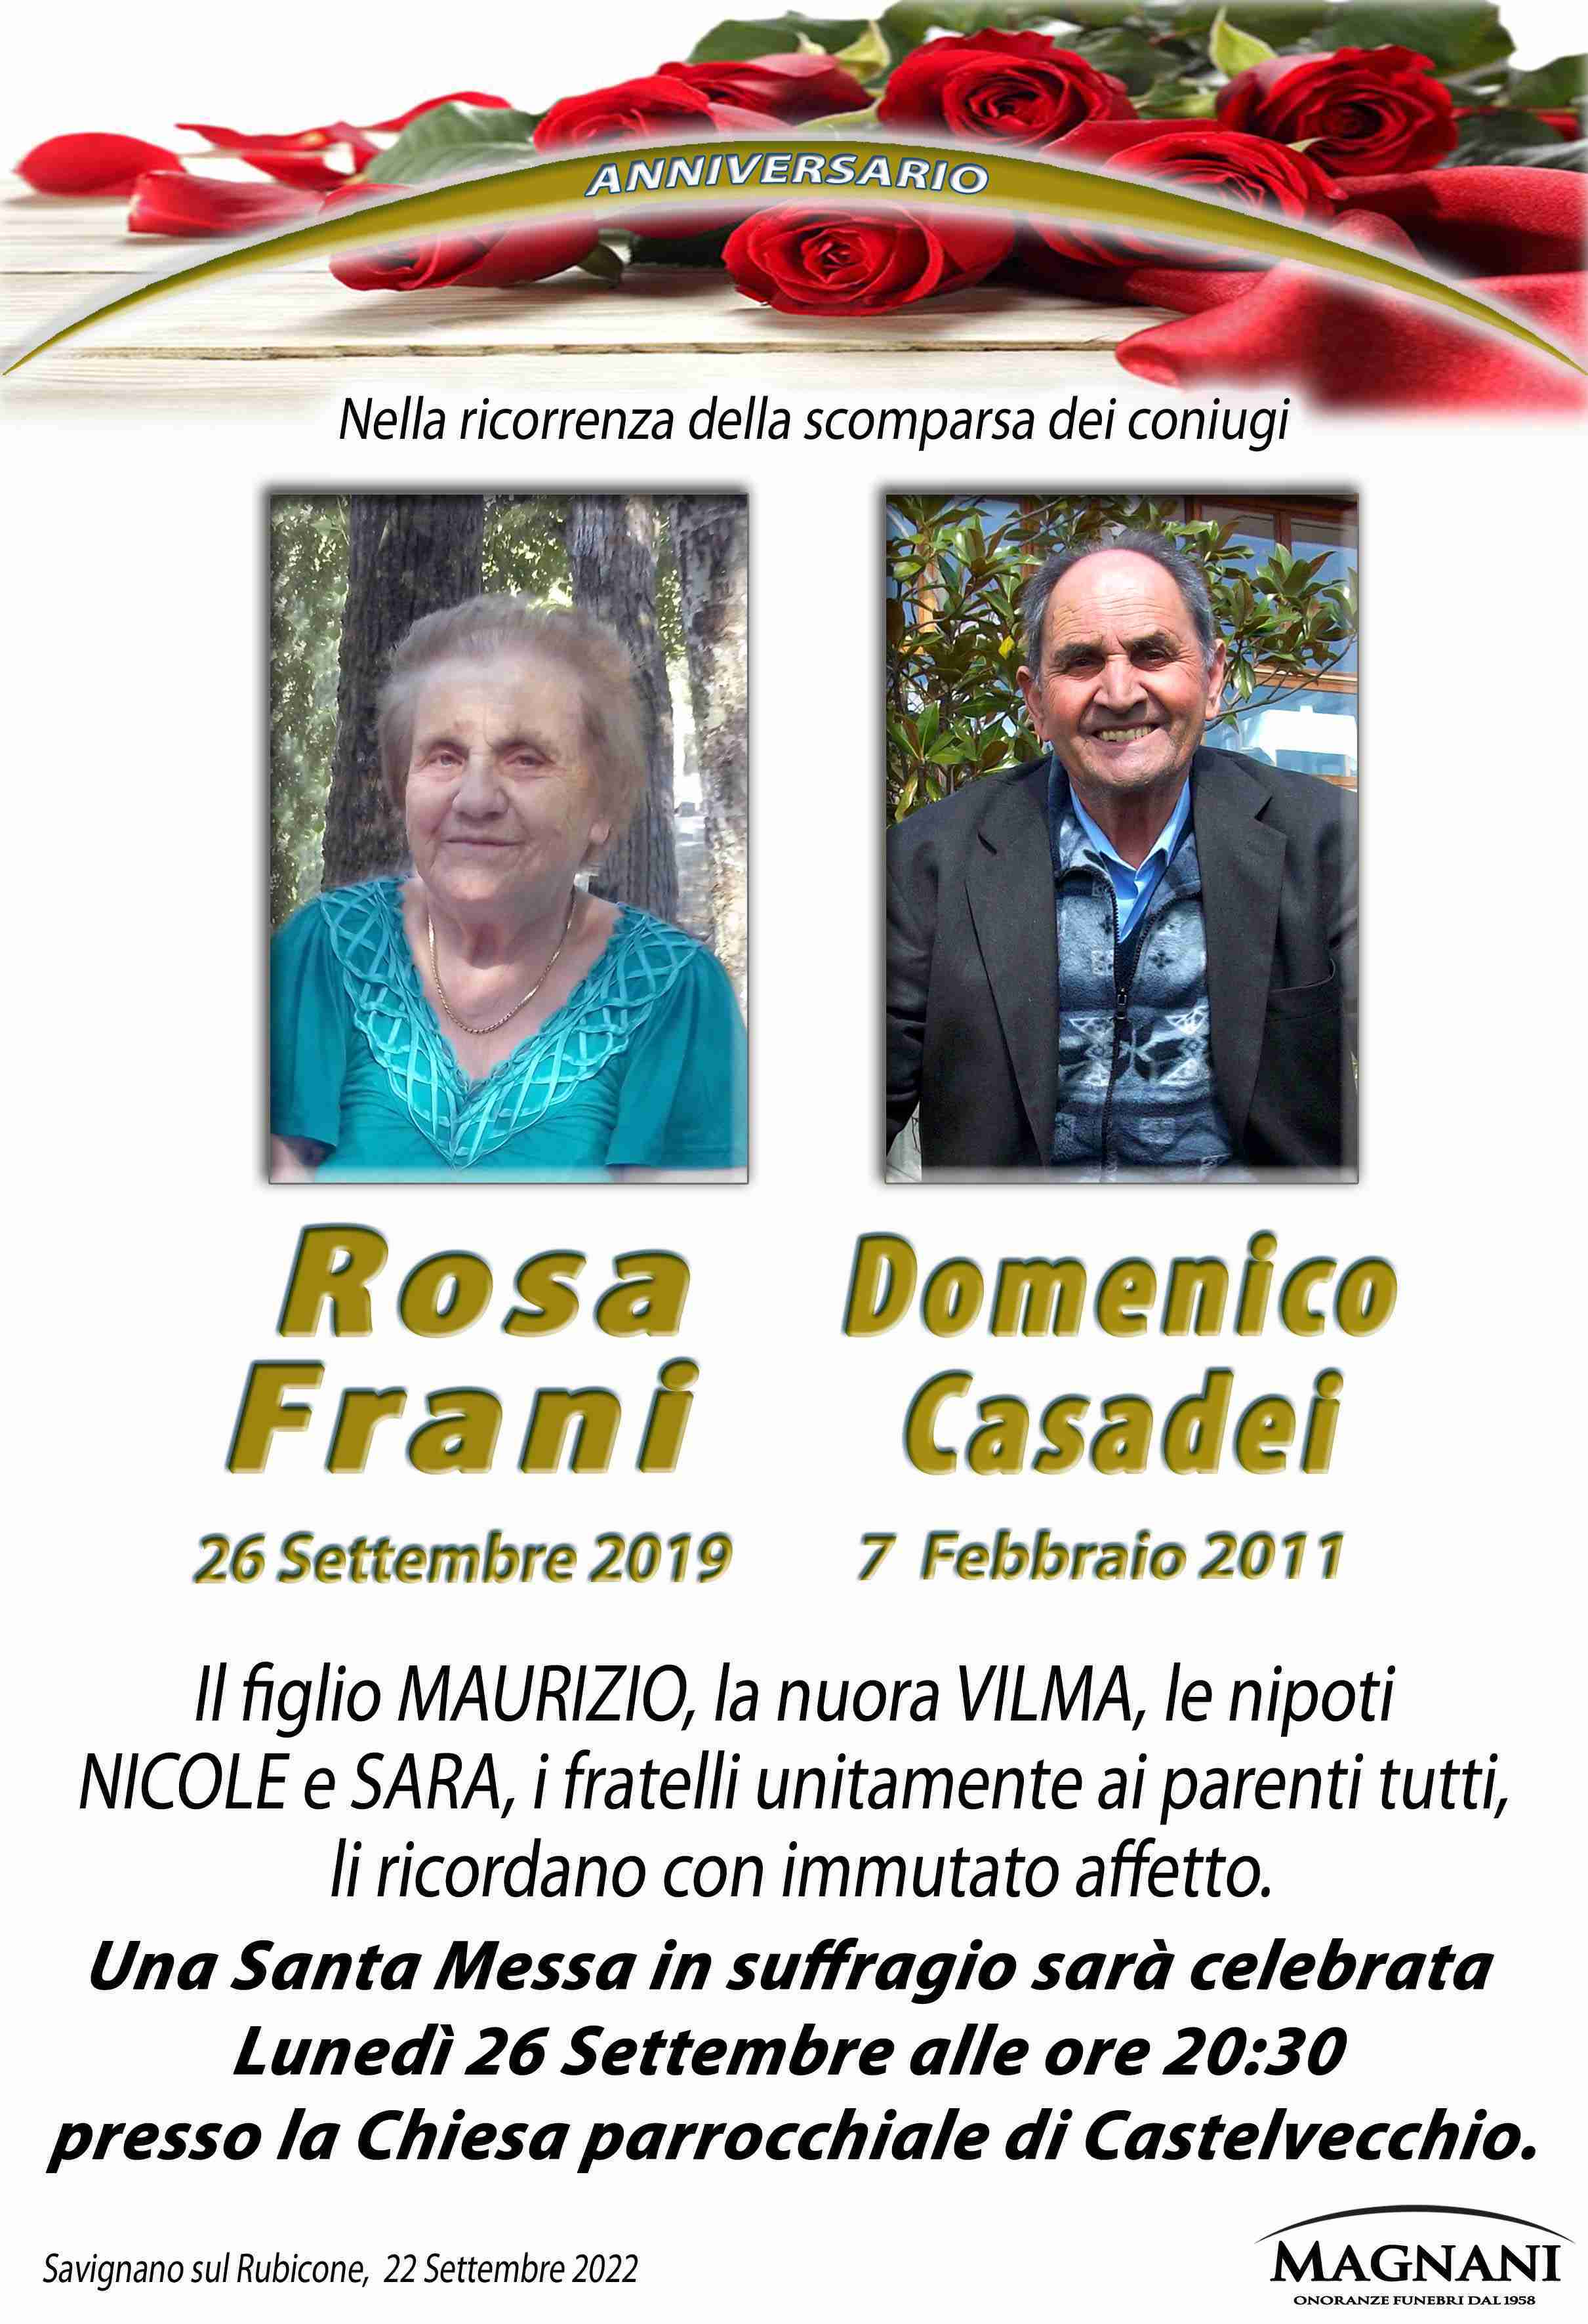 Coniugi Domenico Casadei e Rosa Frani